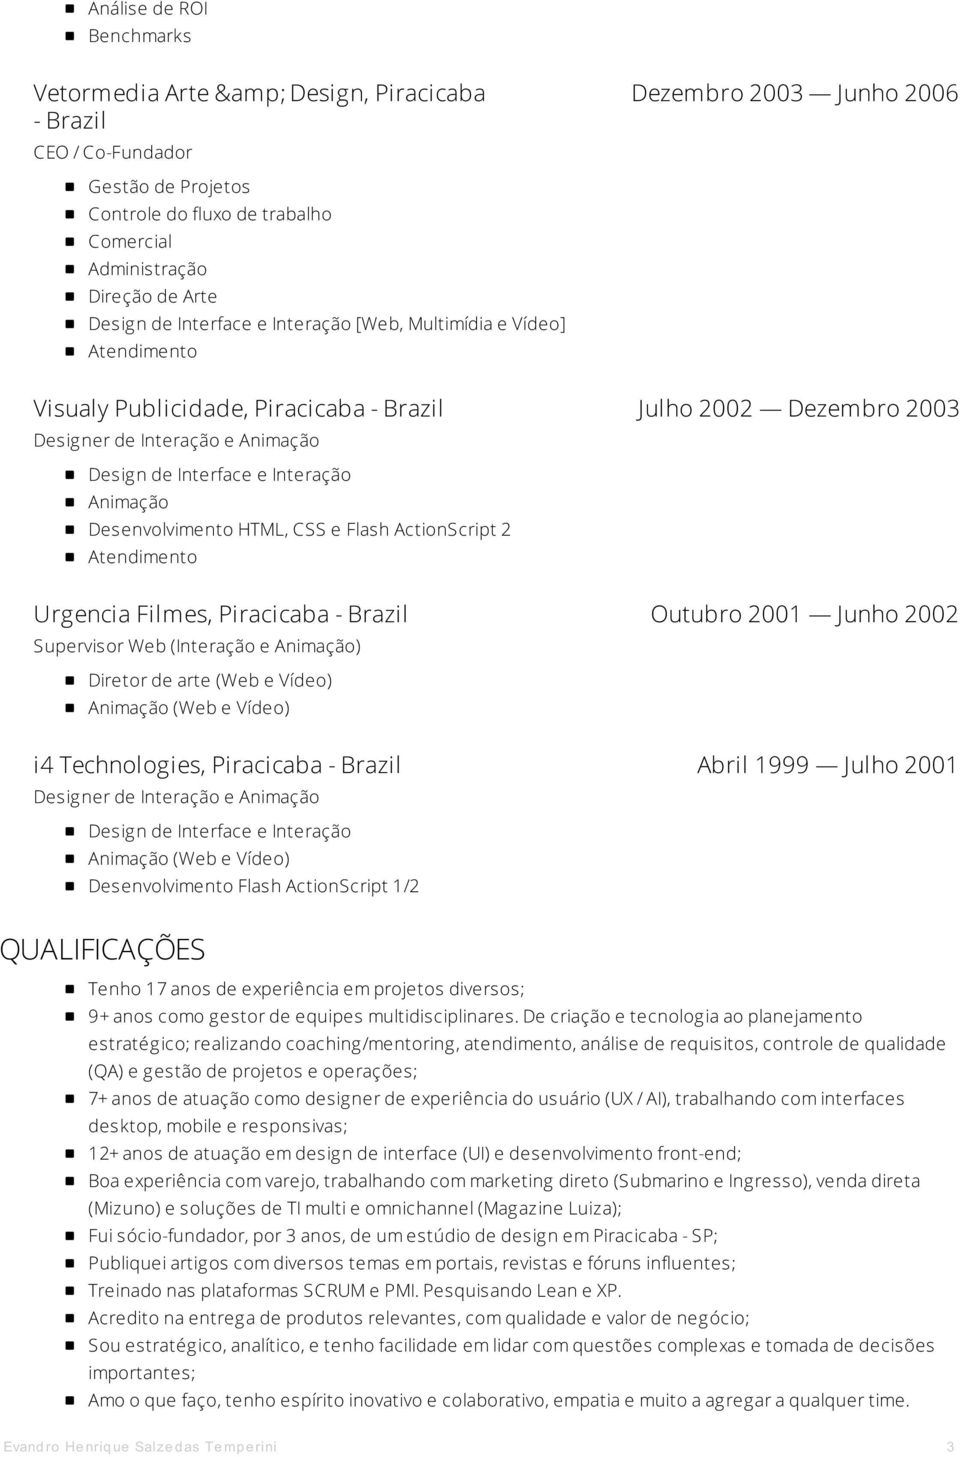 Supervisor Web (Interação e ) Diretor de arte (Web e Vídeo) (Web e Vídeo) i4 Technologies, Piracicaba - Brazil Abril 1999 Julho 2001 Designer de Interação e (Web e Vídeo) Desenvolvimento Flash